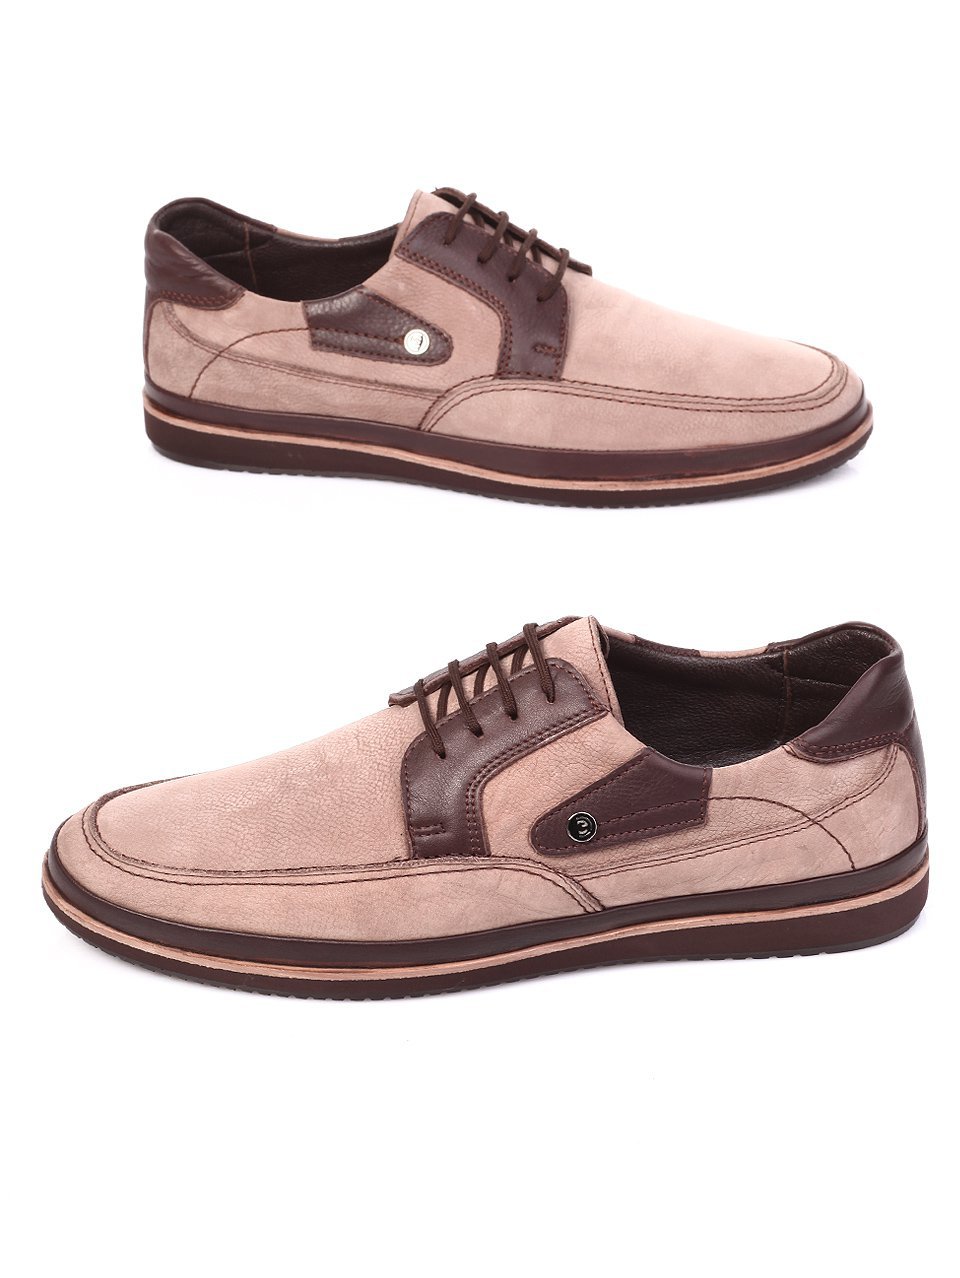 Спортно-елегантни мъжки обувки от естествен велур 7AT-17604 brown